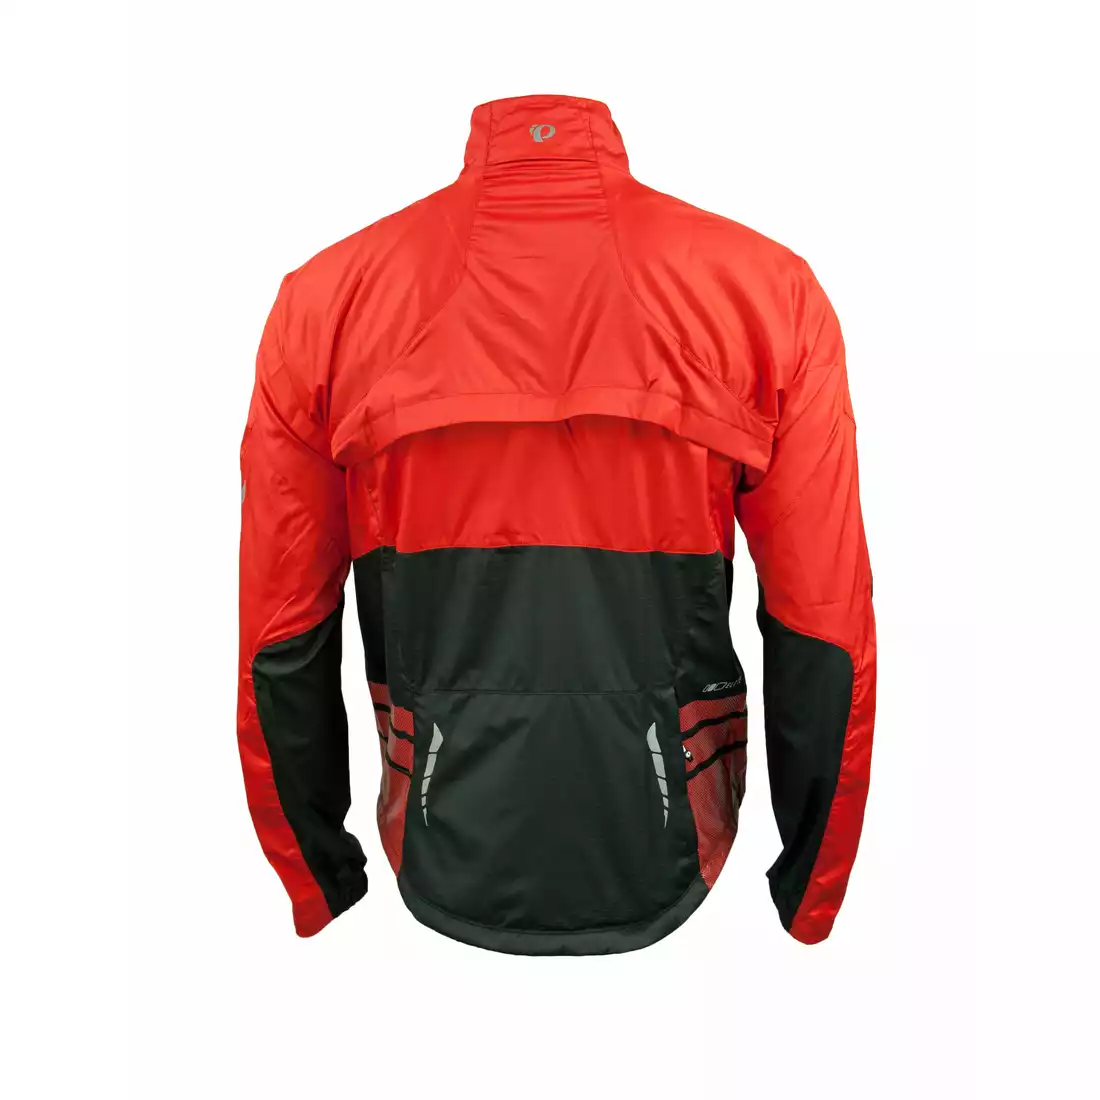 PEARL IZUMI - ELITE Barrier Convertible Jacket 11131314-3DM - kurtko-kamizelka rowerowa, kolor: Czerwony